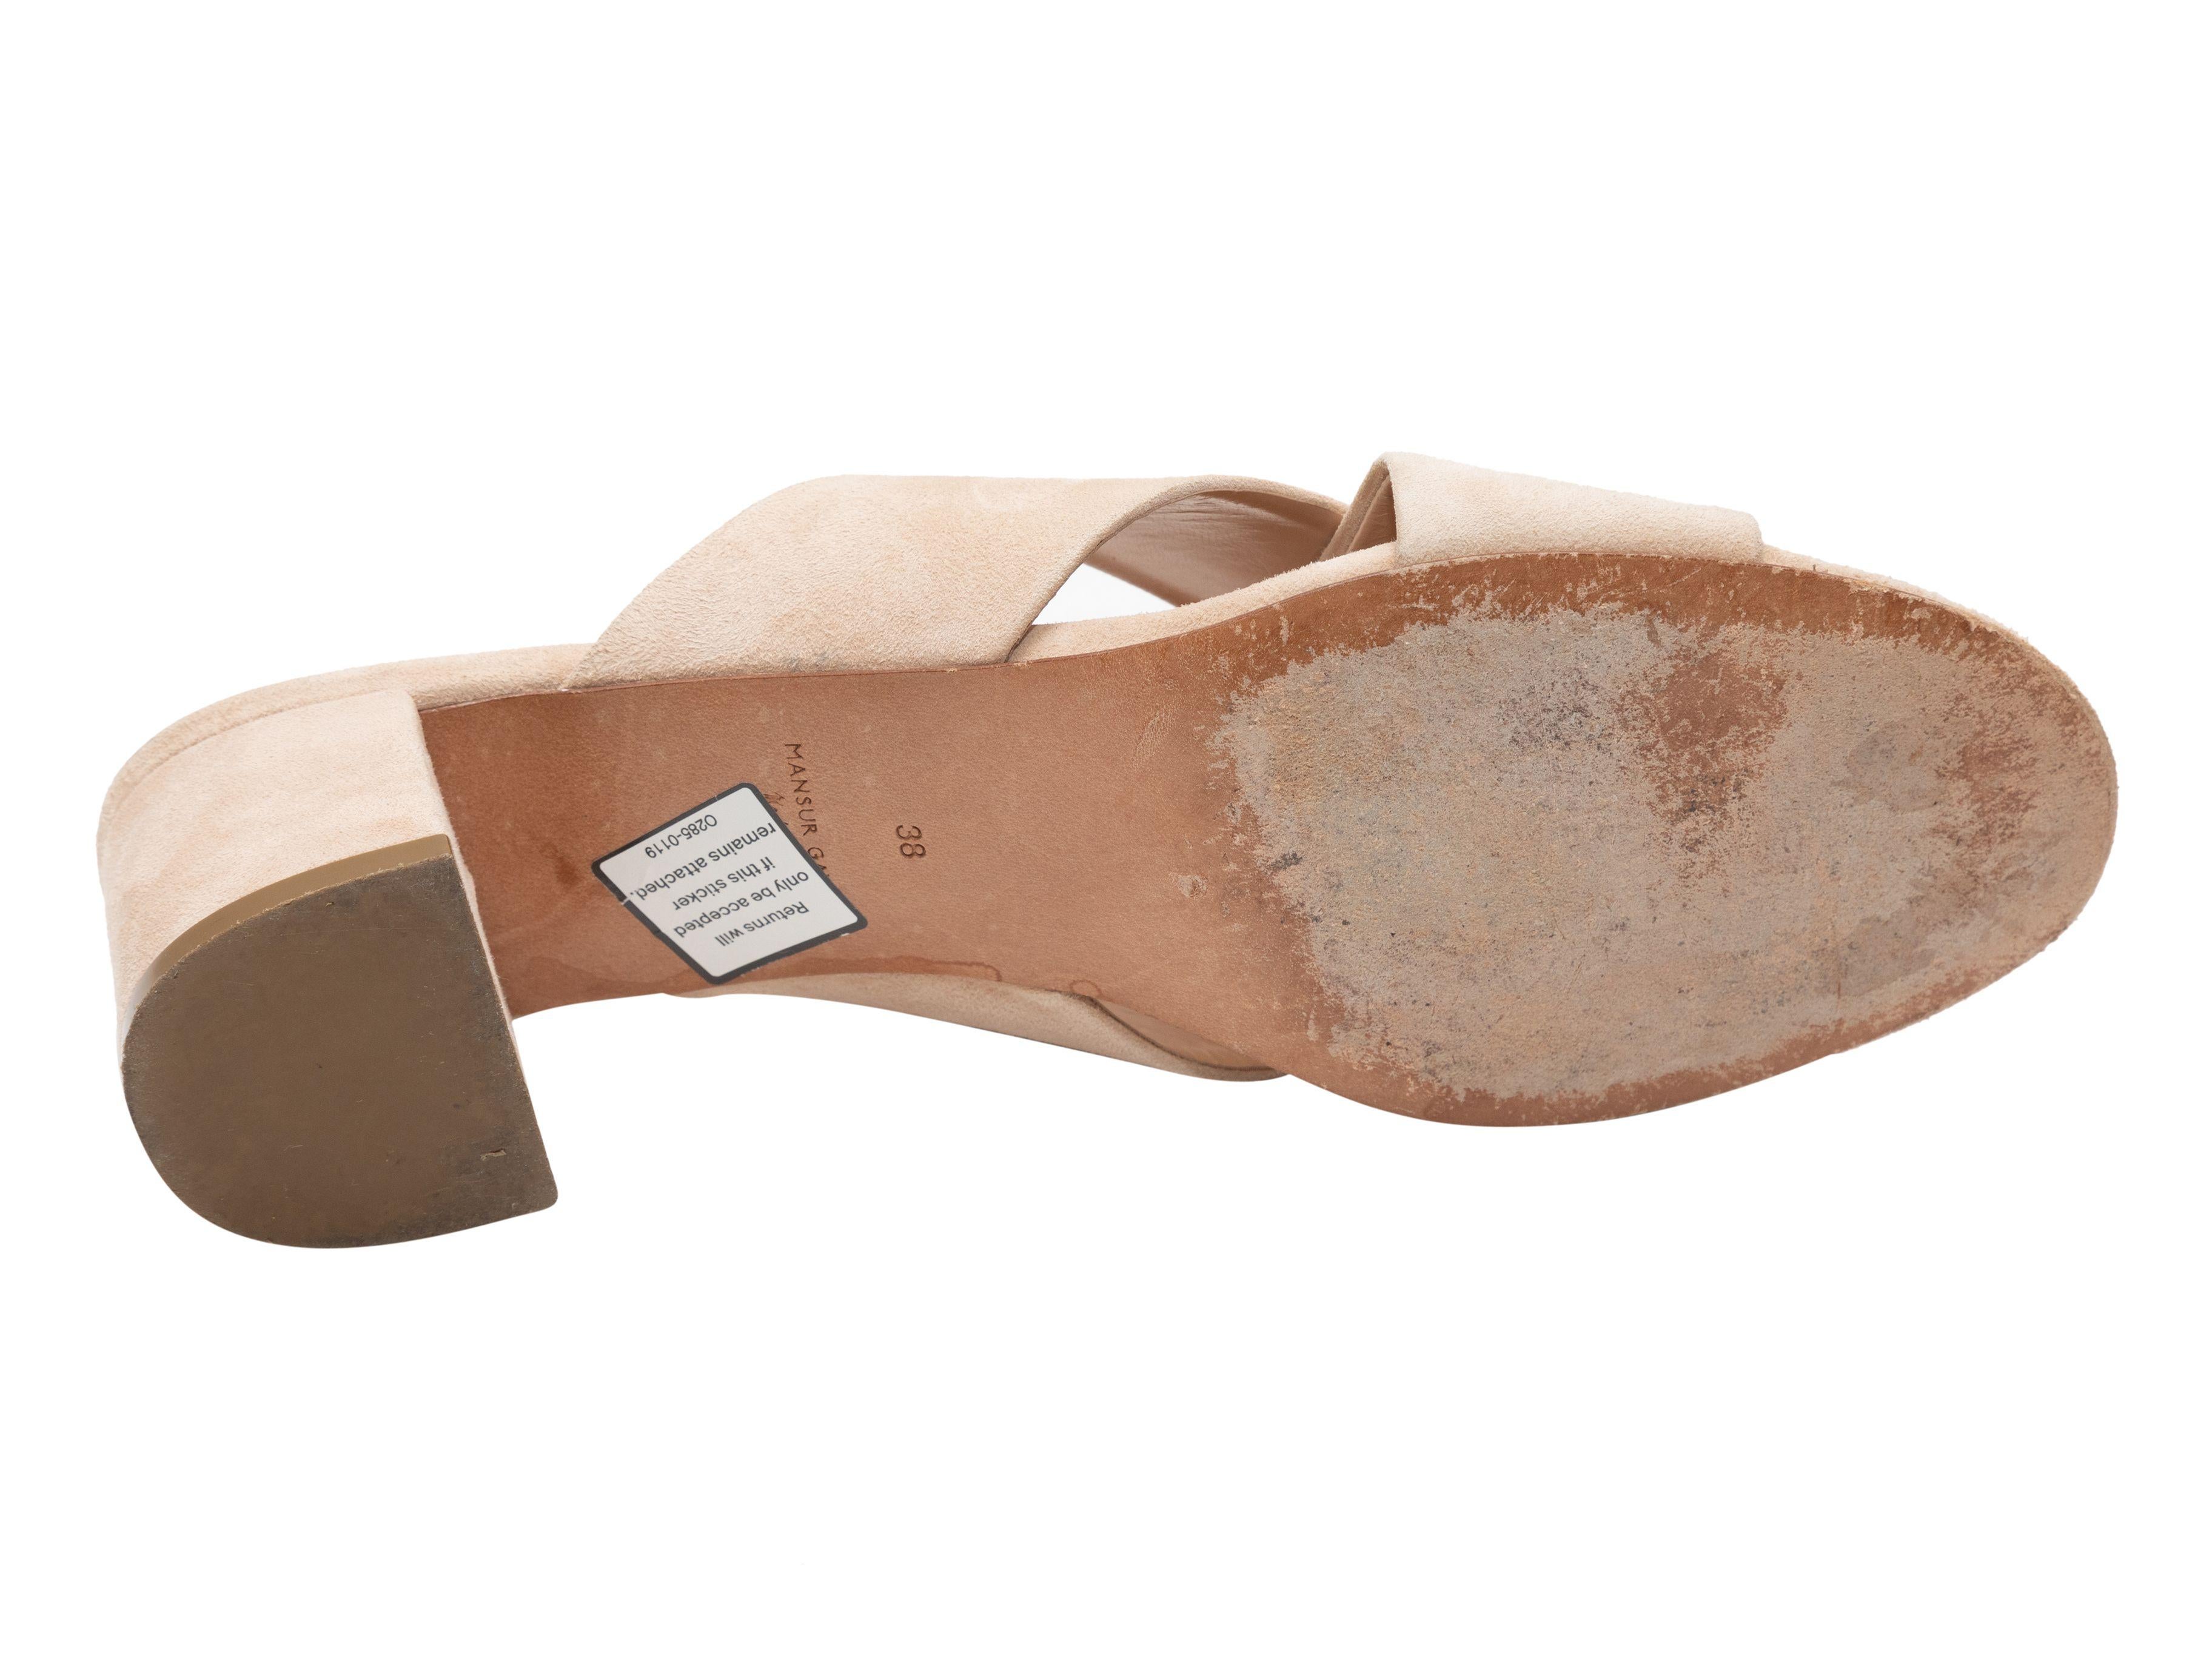 Product Details: Beige suede heeled slide sandals by Mansur Gavriel. 2